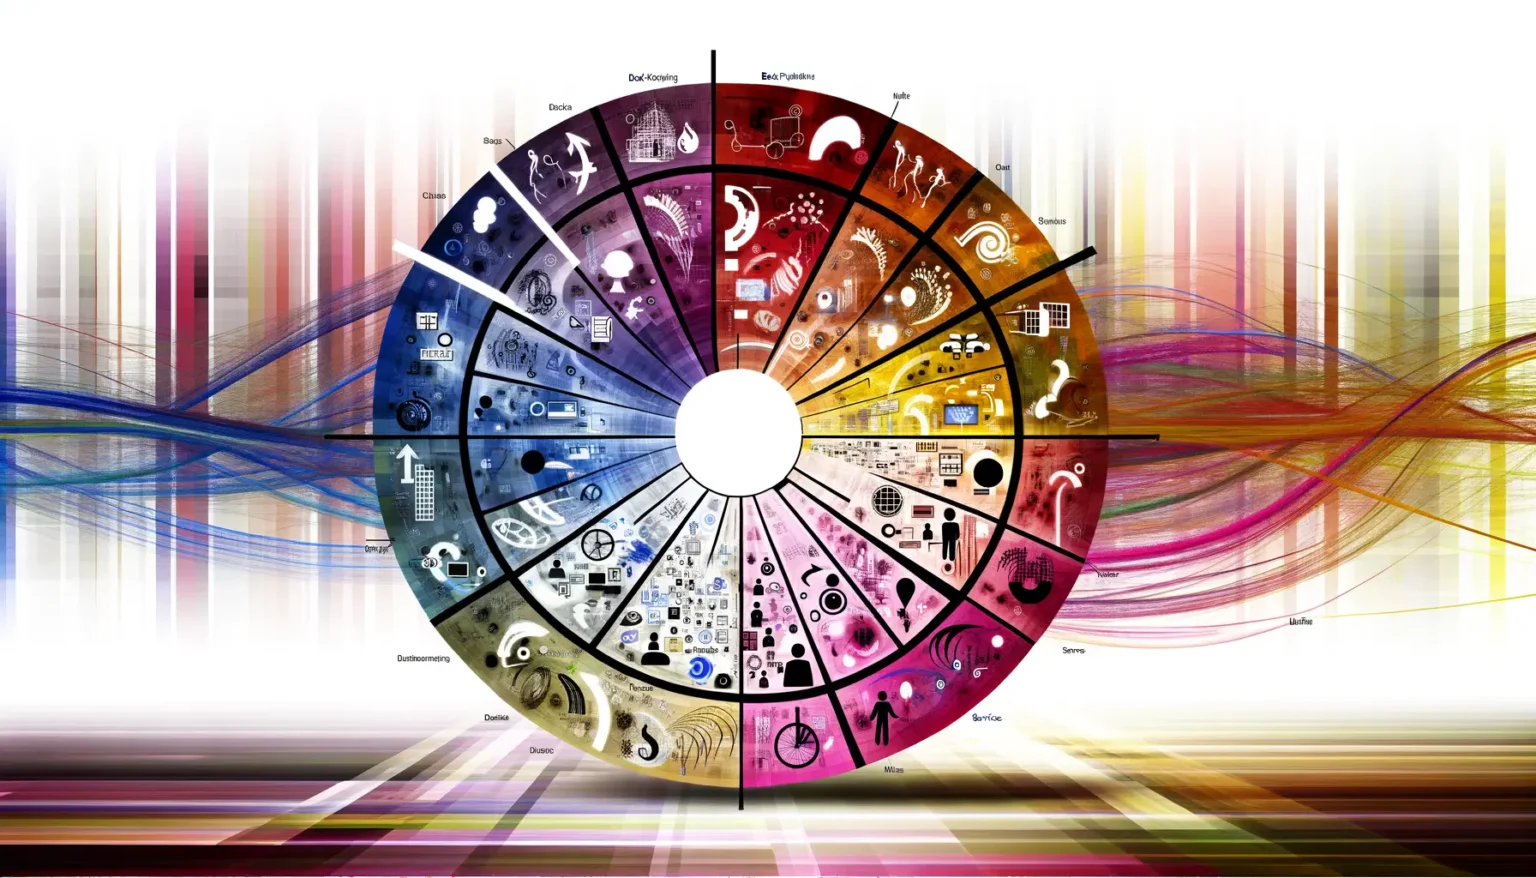 Farbenfrohes, kreisförmiges Diagramm mit verschiedenen Sektionen, die verschiedene wissenschaftliche und technologische Themen darstellen, überlagert von einem Hintergrund mit dynamischen, abstrakten, farbigen Linien und Strukturen.